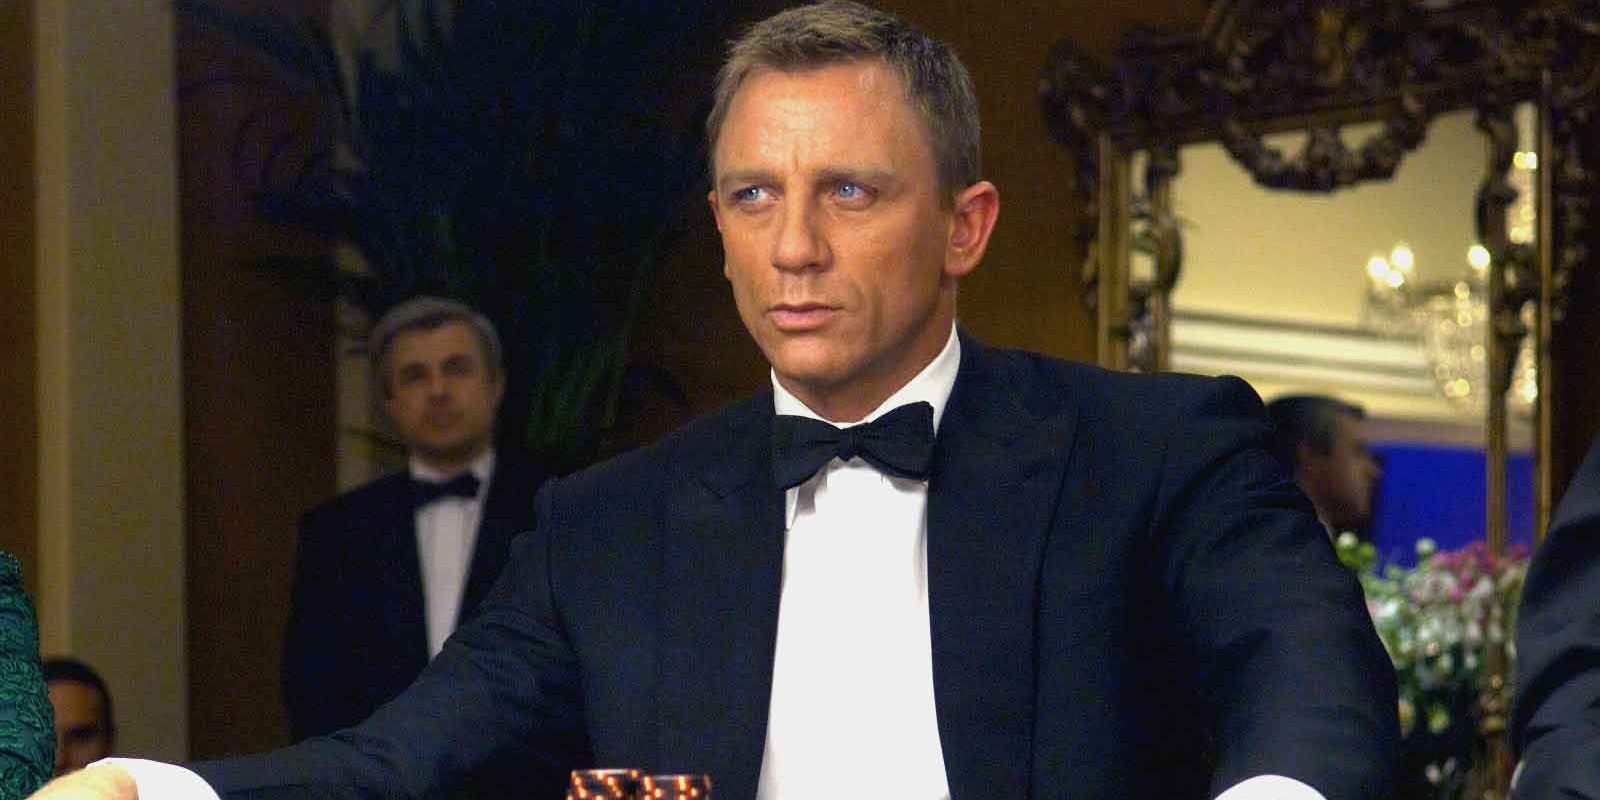 “Podría hundir la franquicia”: por qué una estrella pasó a James Bond de Casino Royale